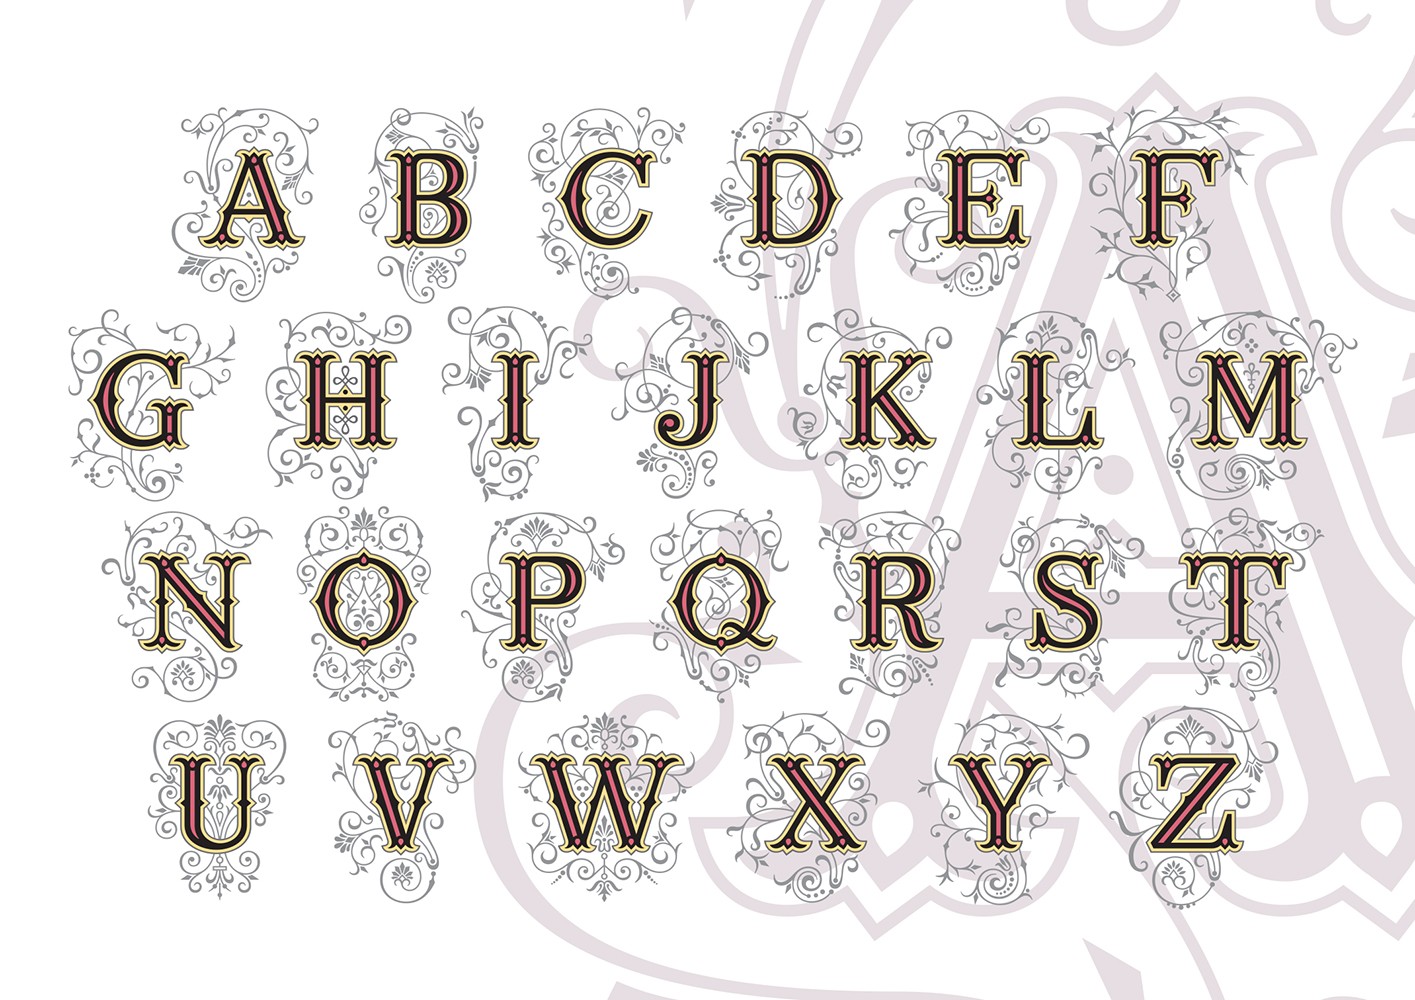 Hromatsko tipografsko pismo Ana